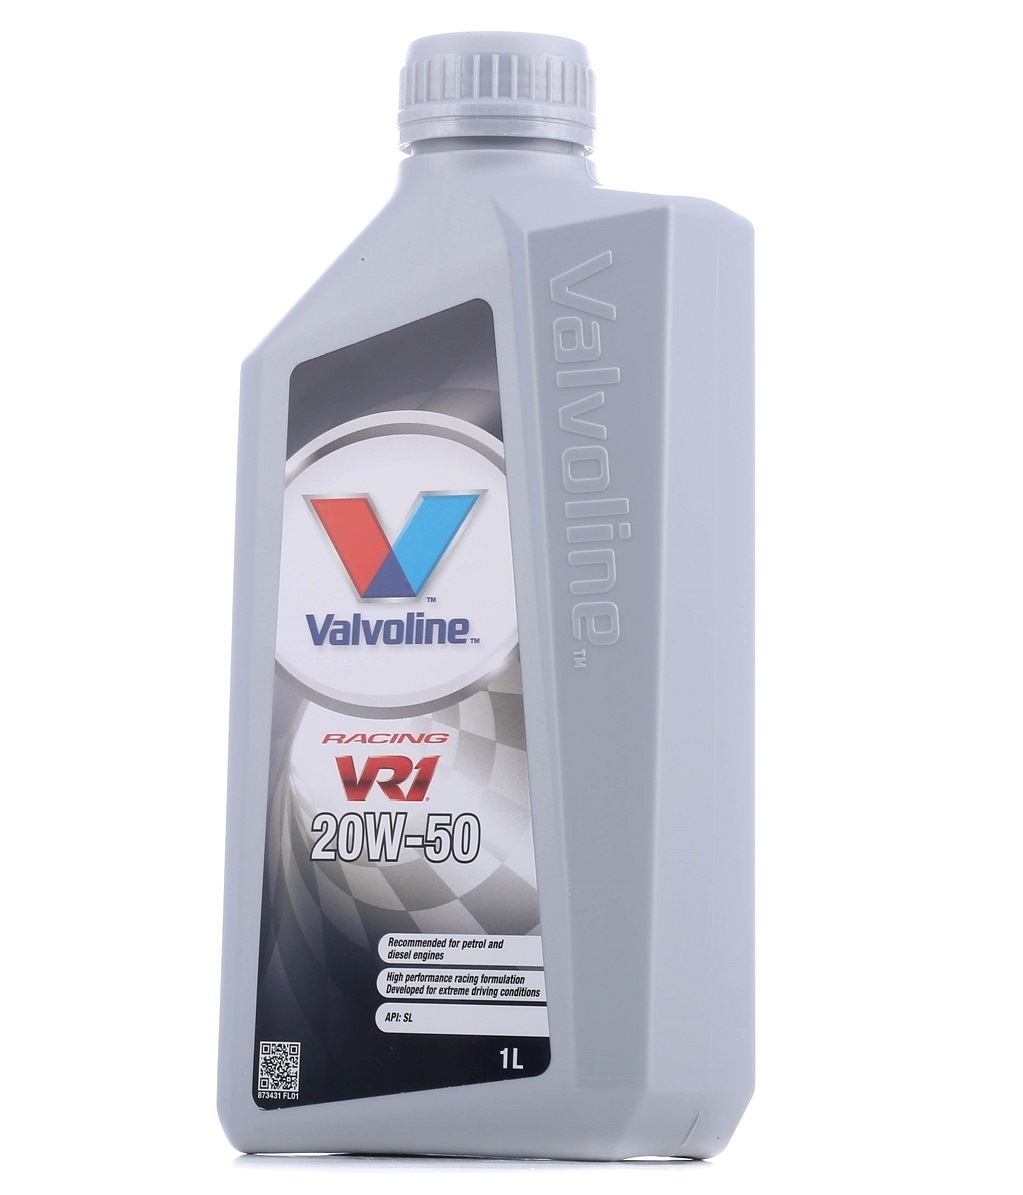 Great value for money - Valvoline Engine oil 873431